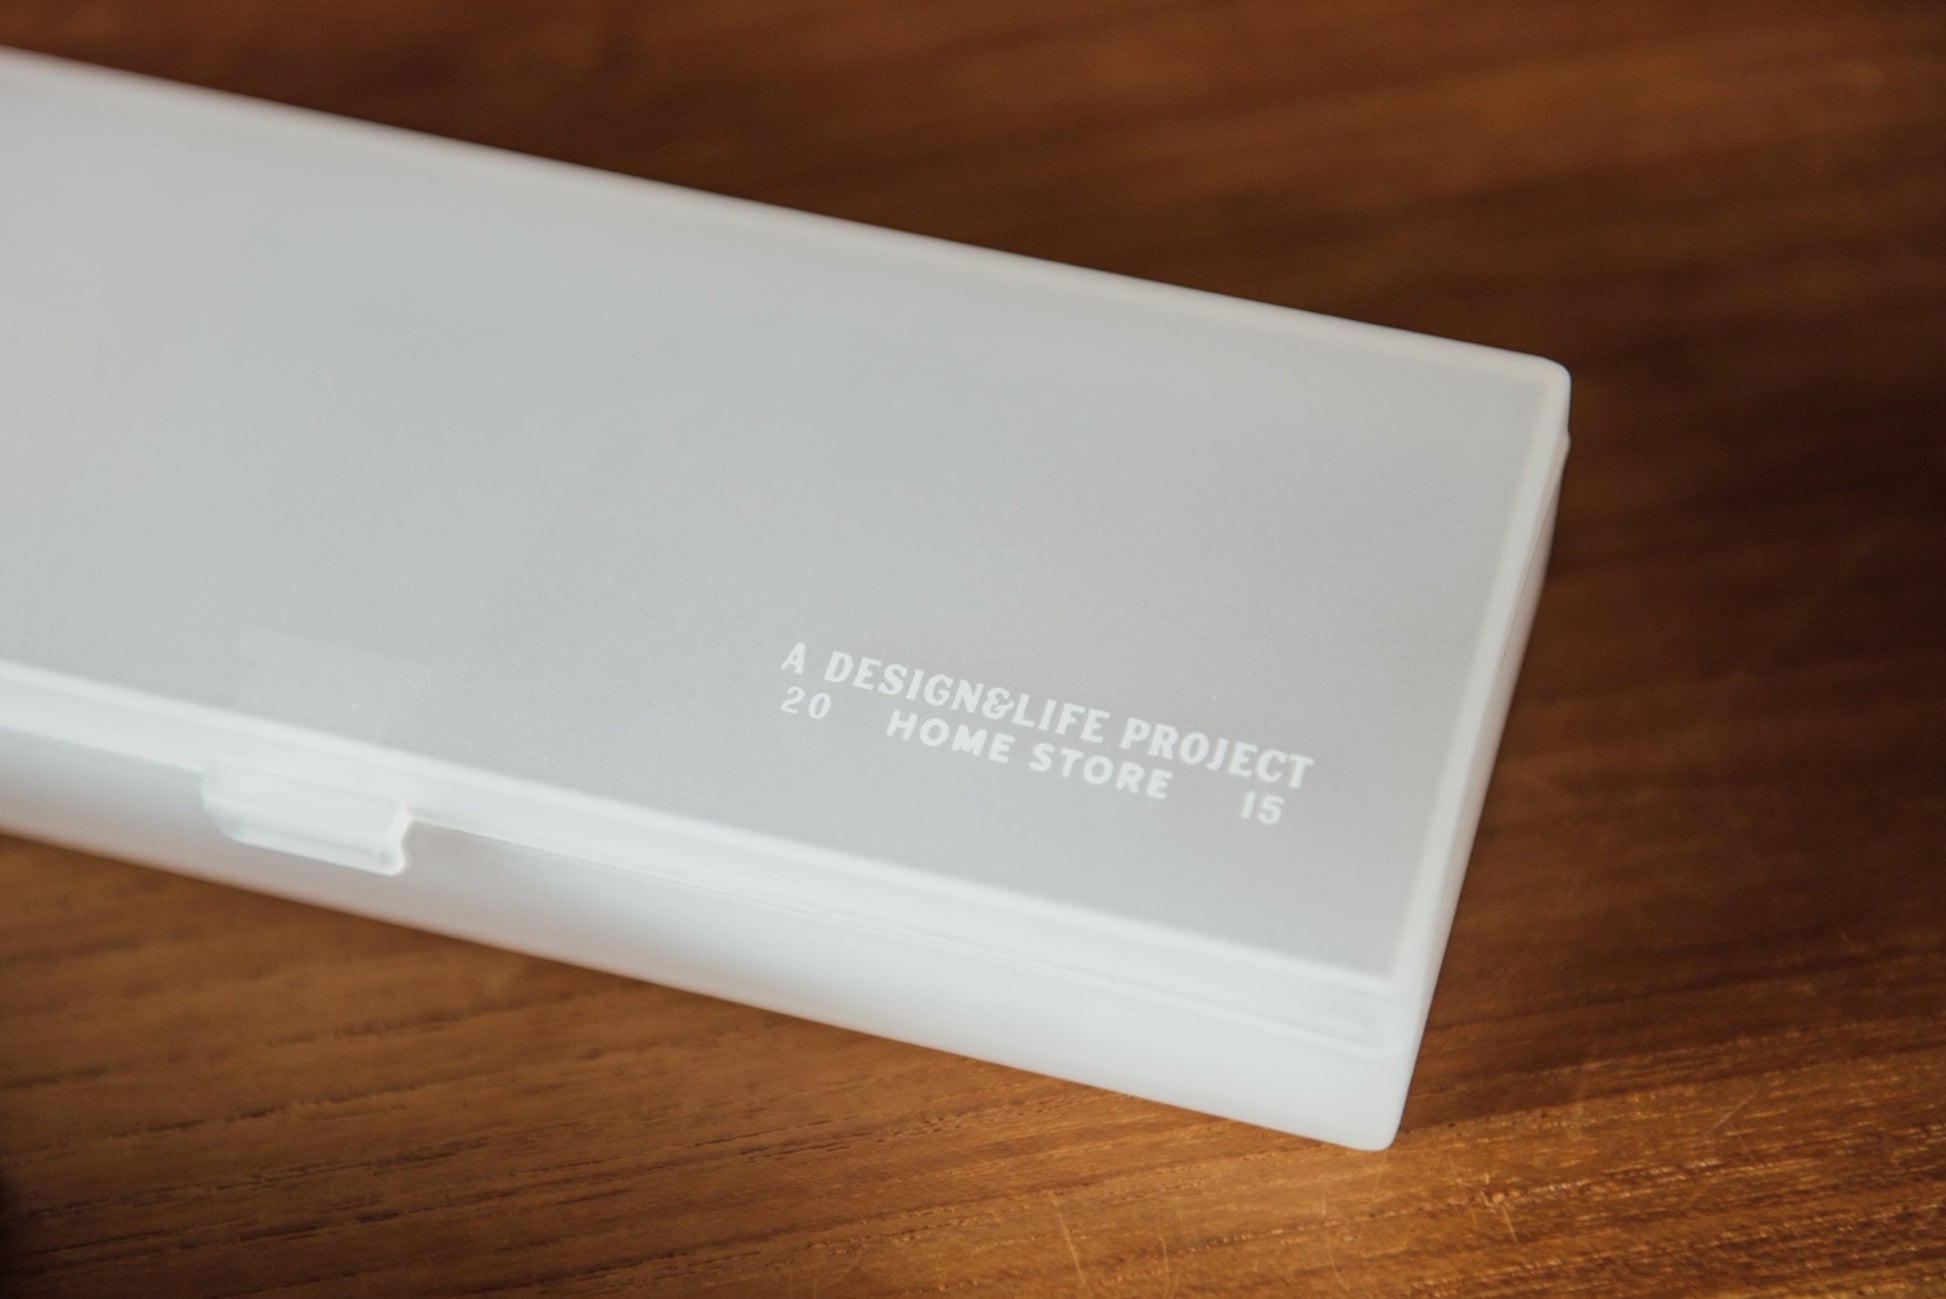 鉛筆盒 - A Design&Life Project